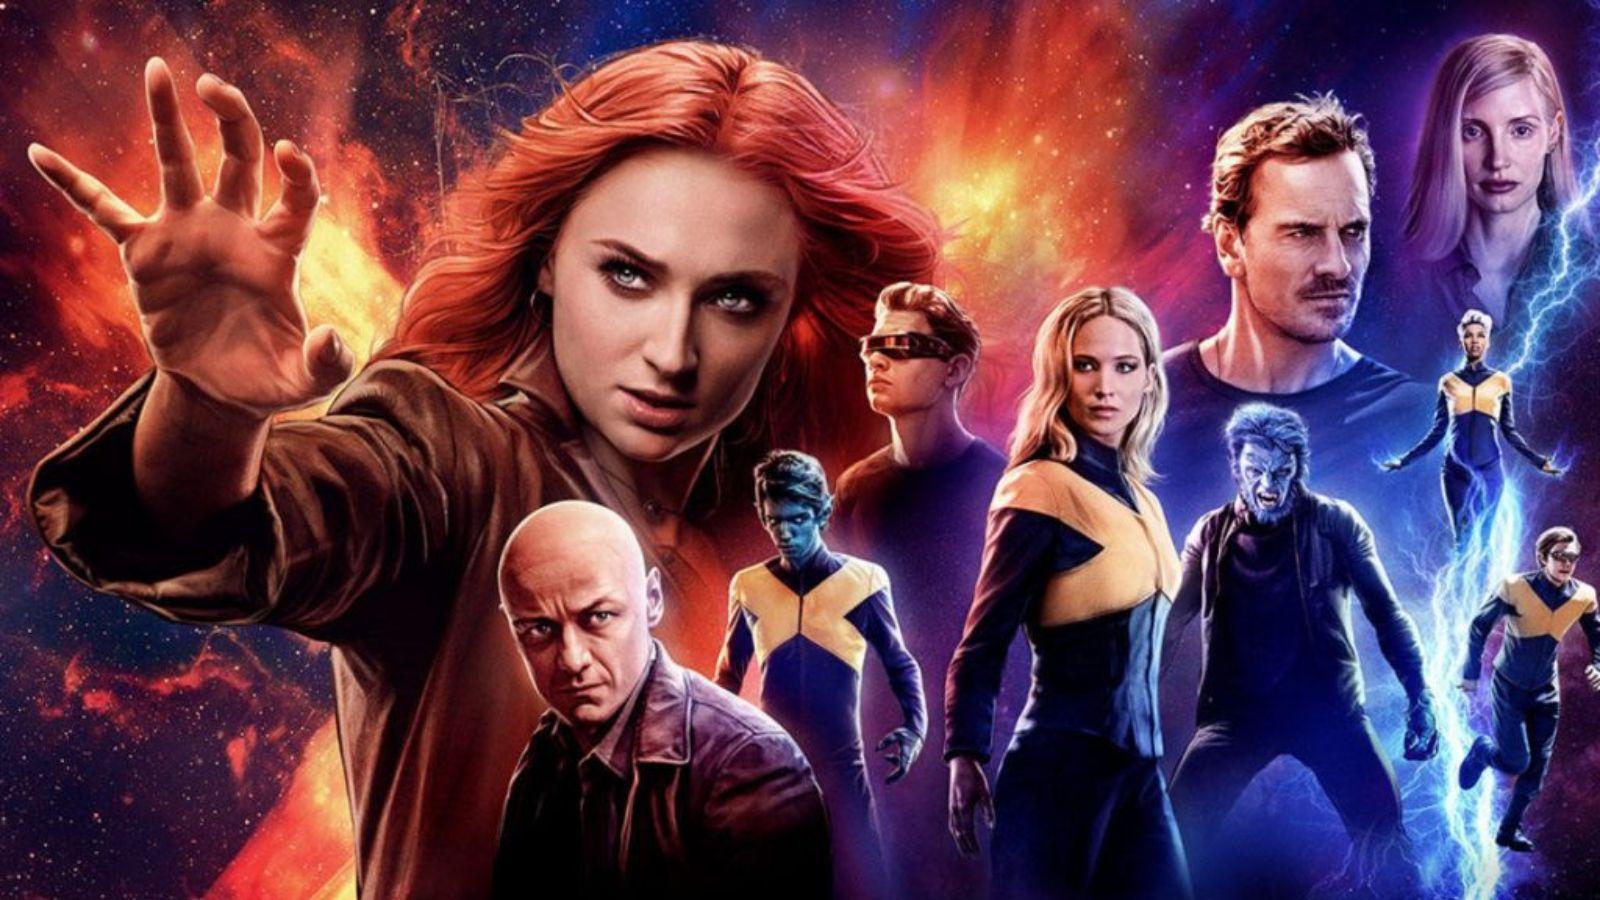 The X-Men: Dark Phoenix cast in an official poster.